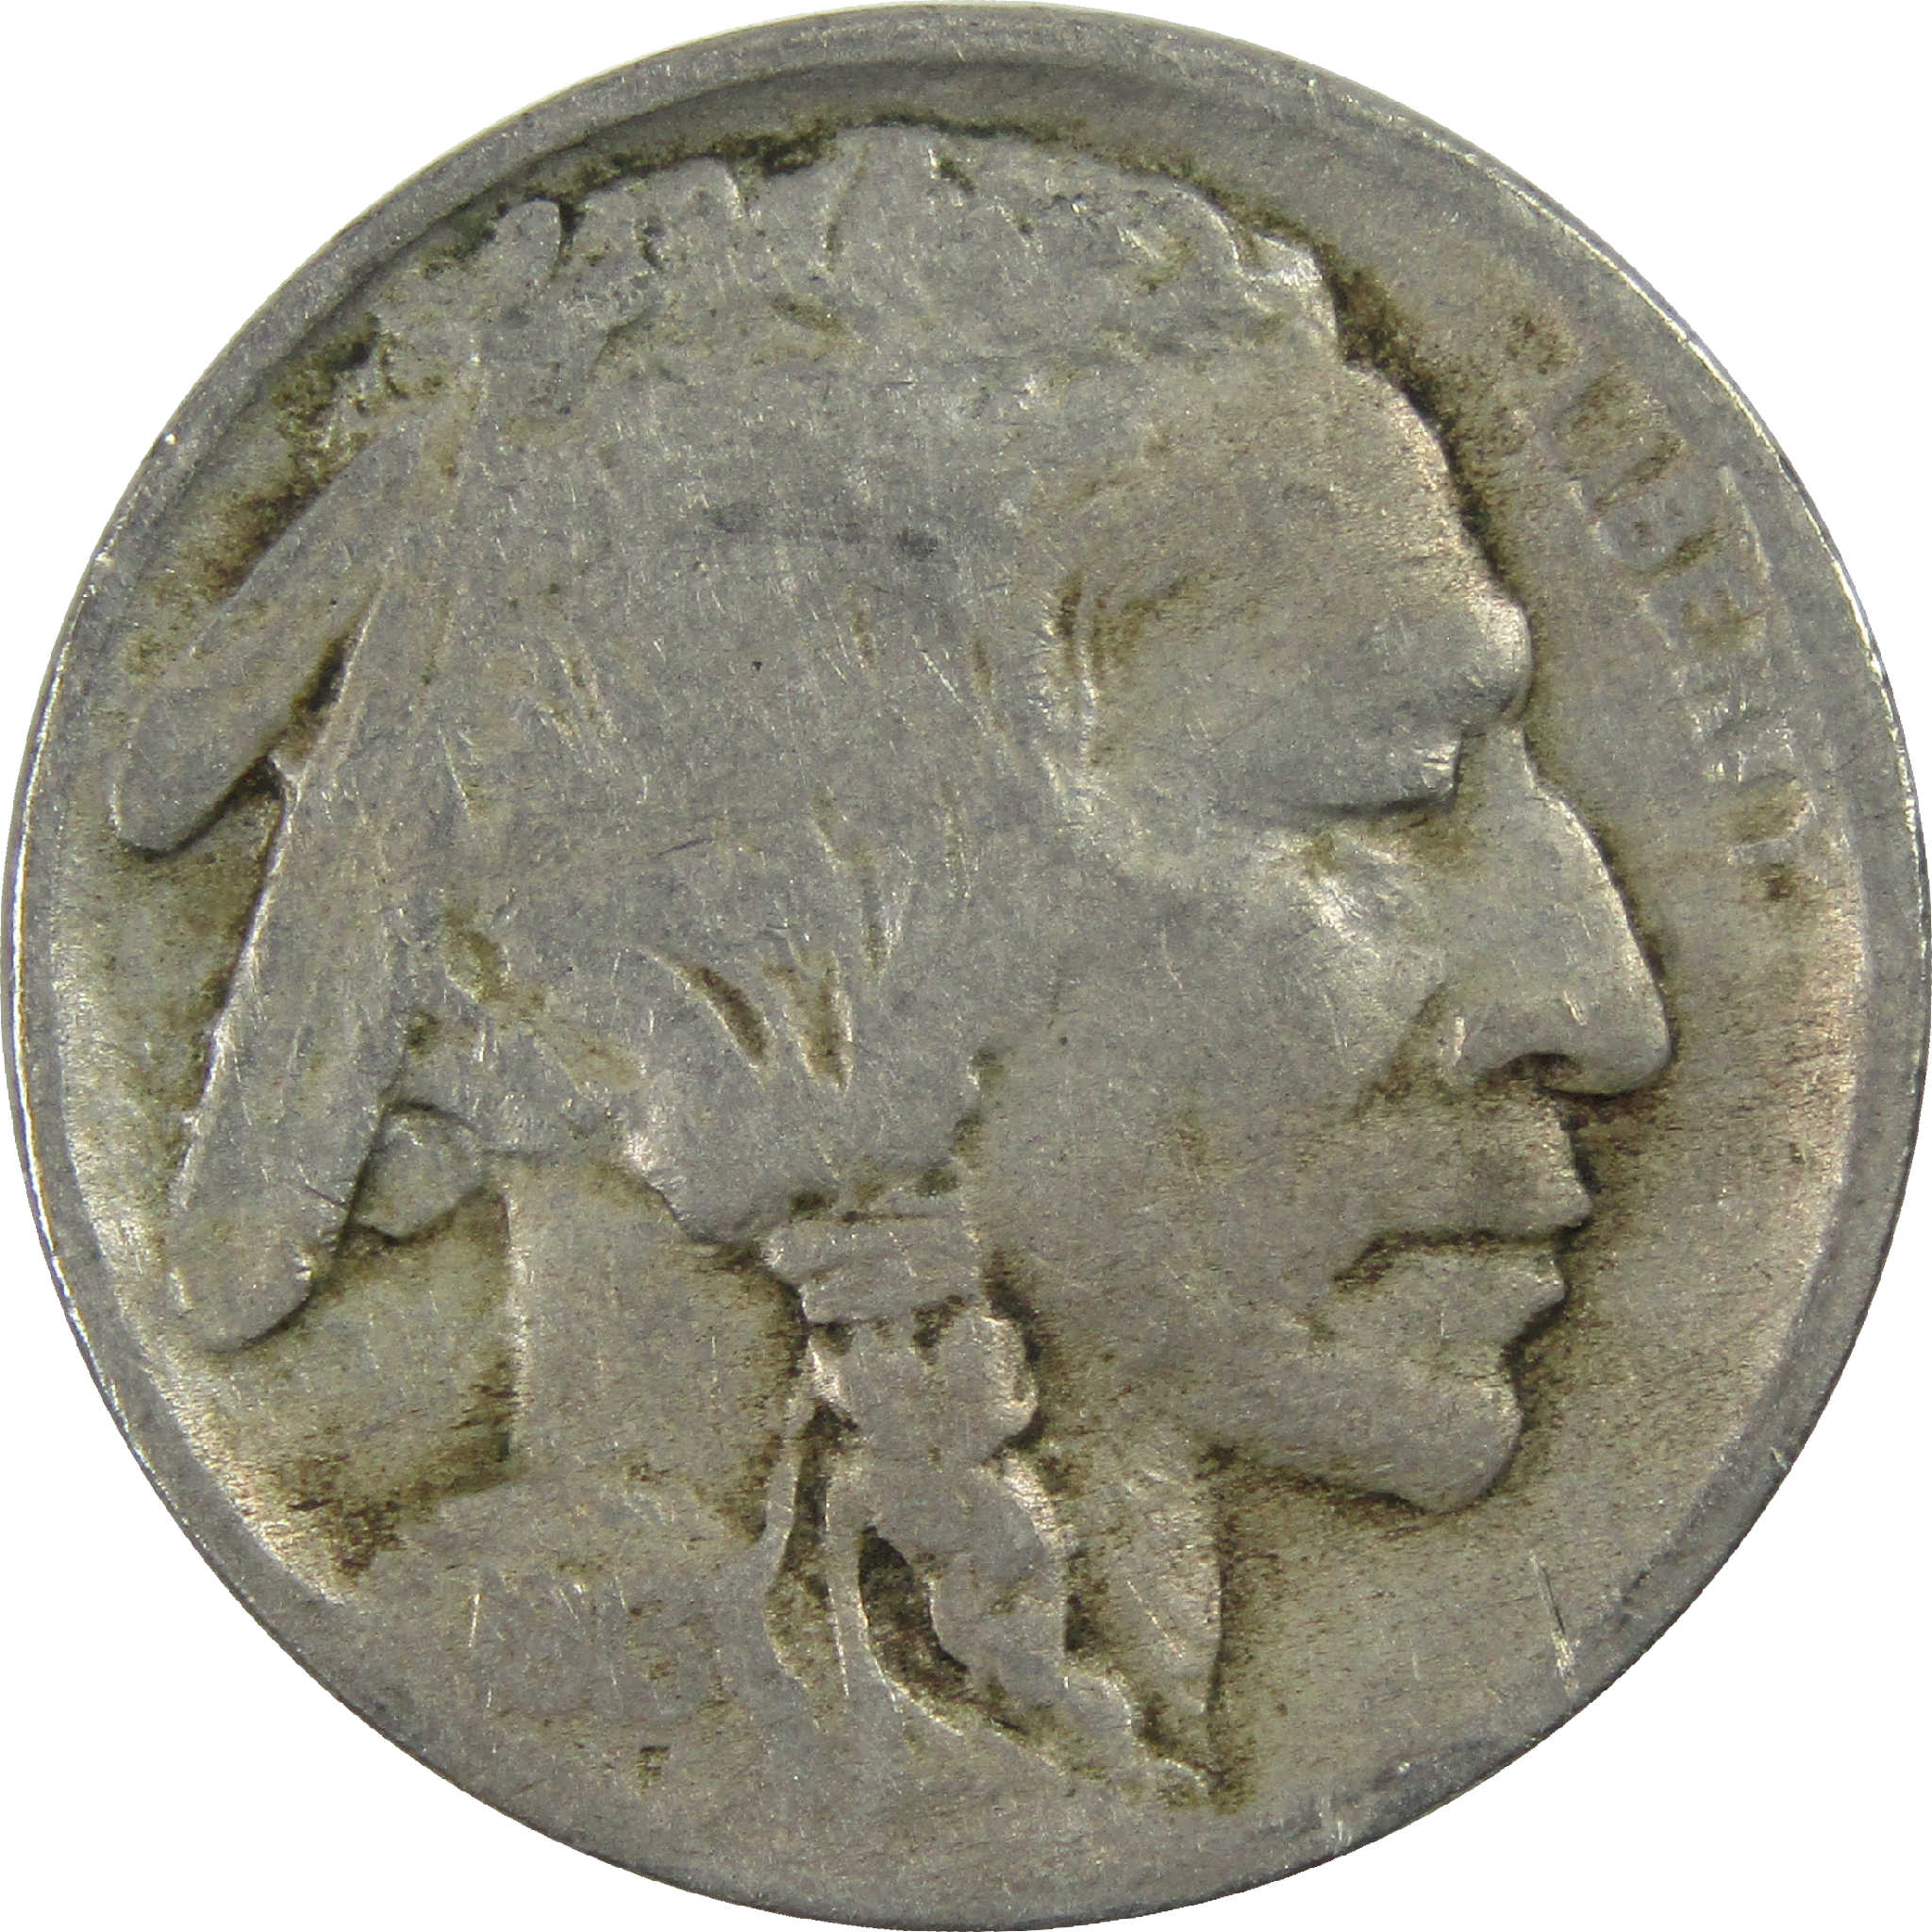 1913 Type 1 Indian Head Buffalo Nickel F Fine 5c Coin SKU:I12597